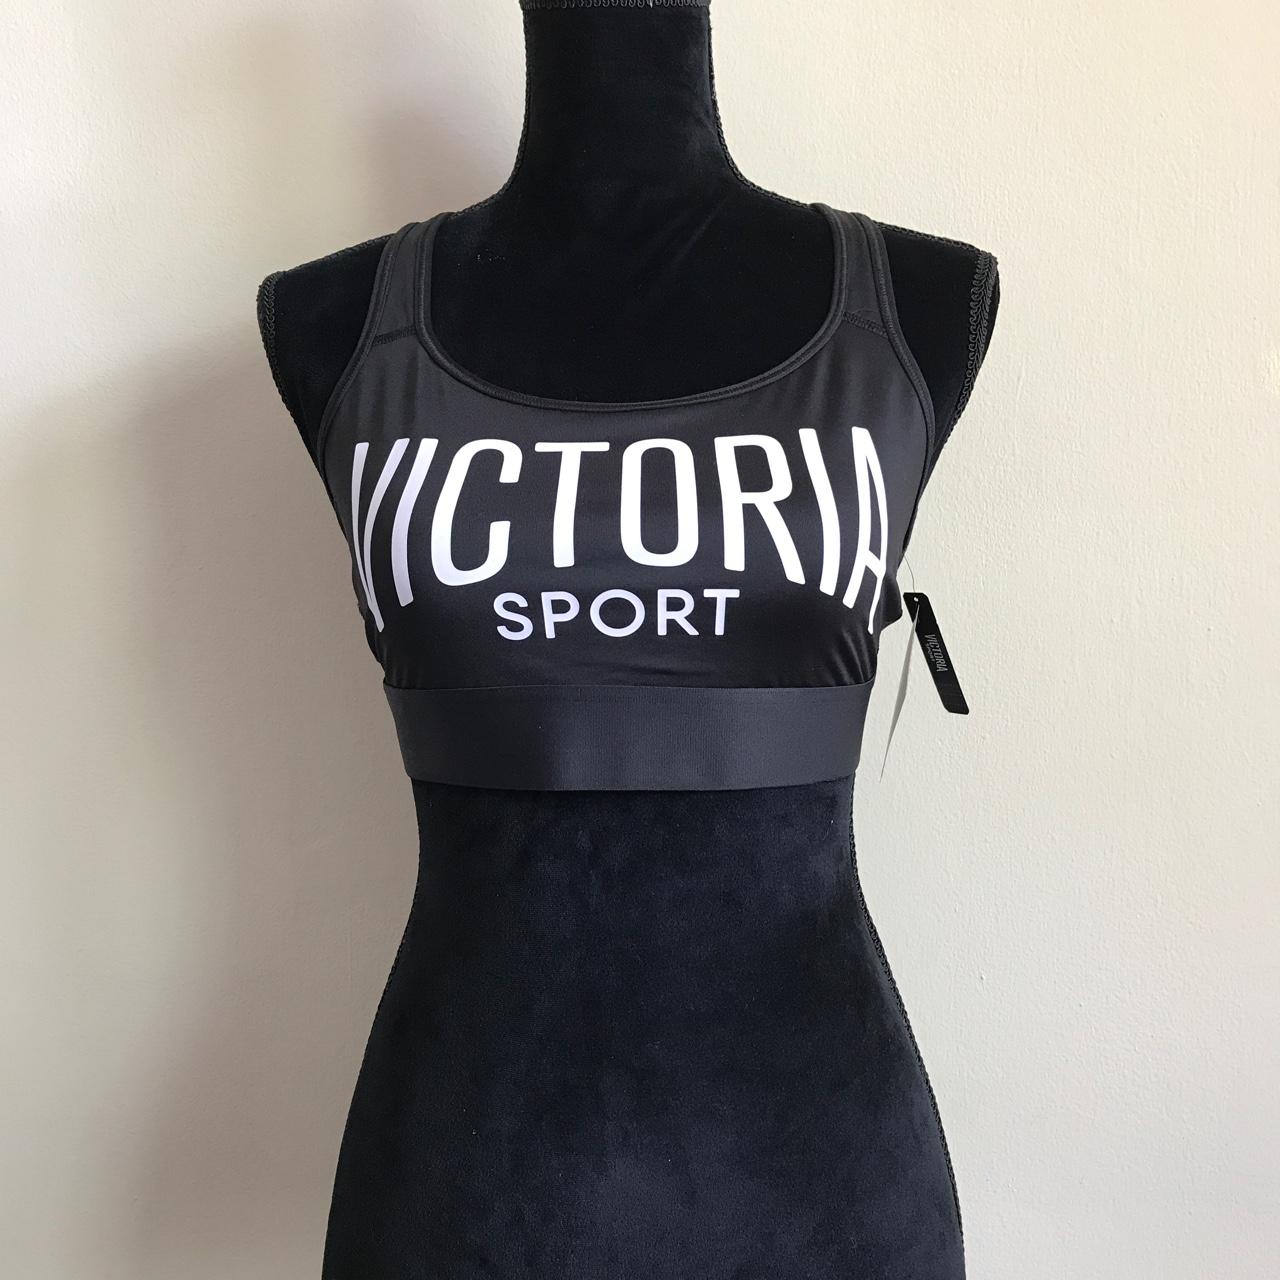 Victoria Secret The Player Unlined Victoria Sport Strappy Racerback Bra  Black S